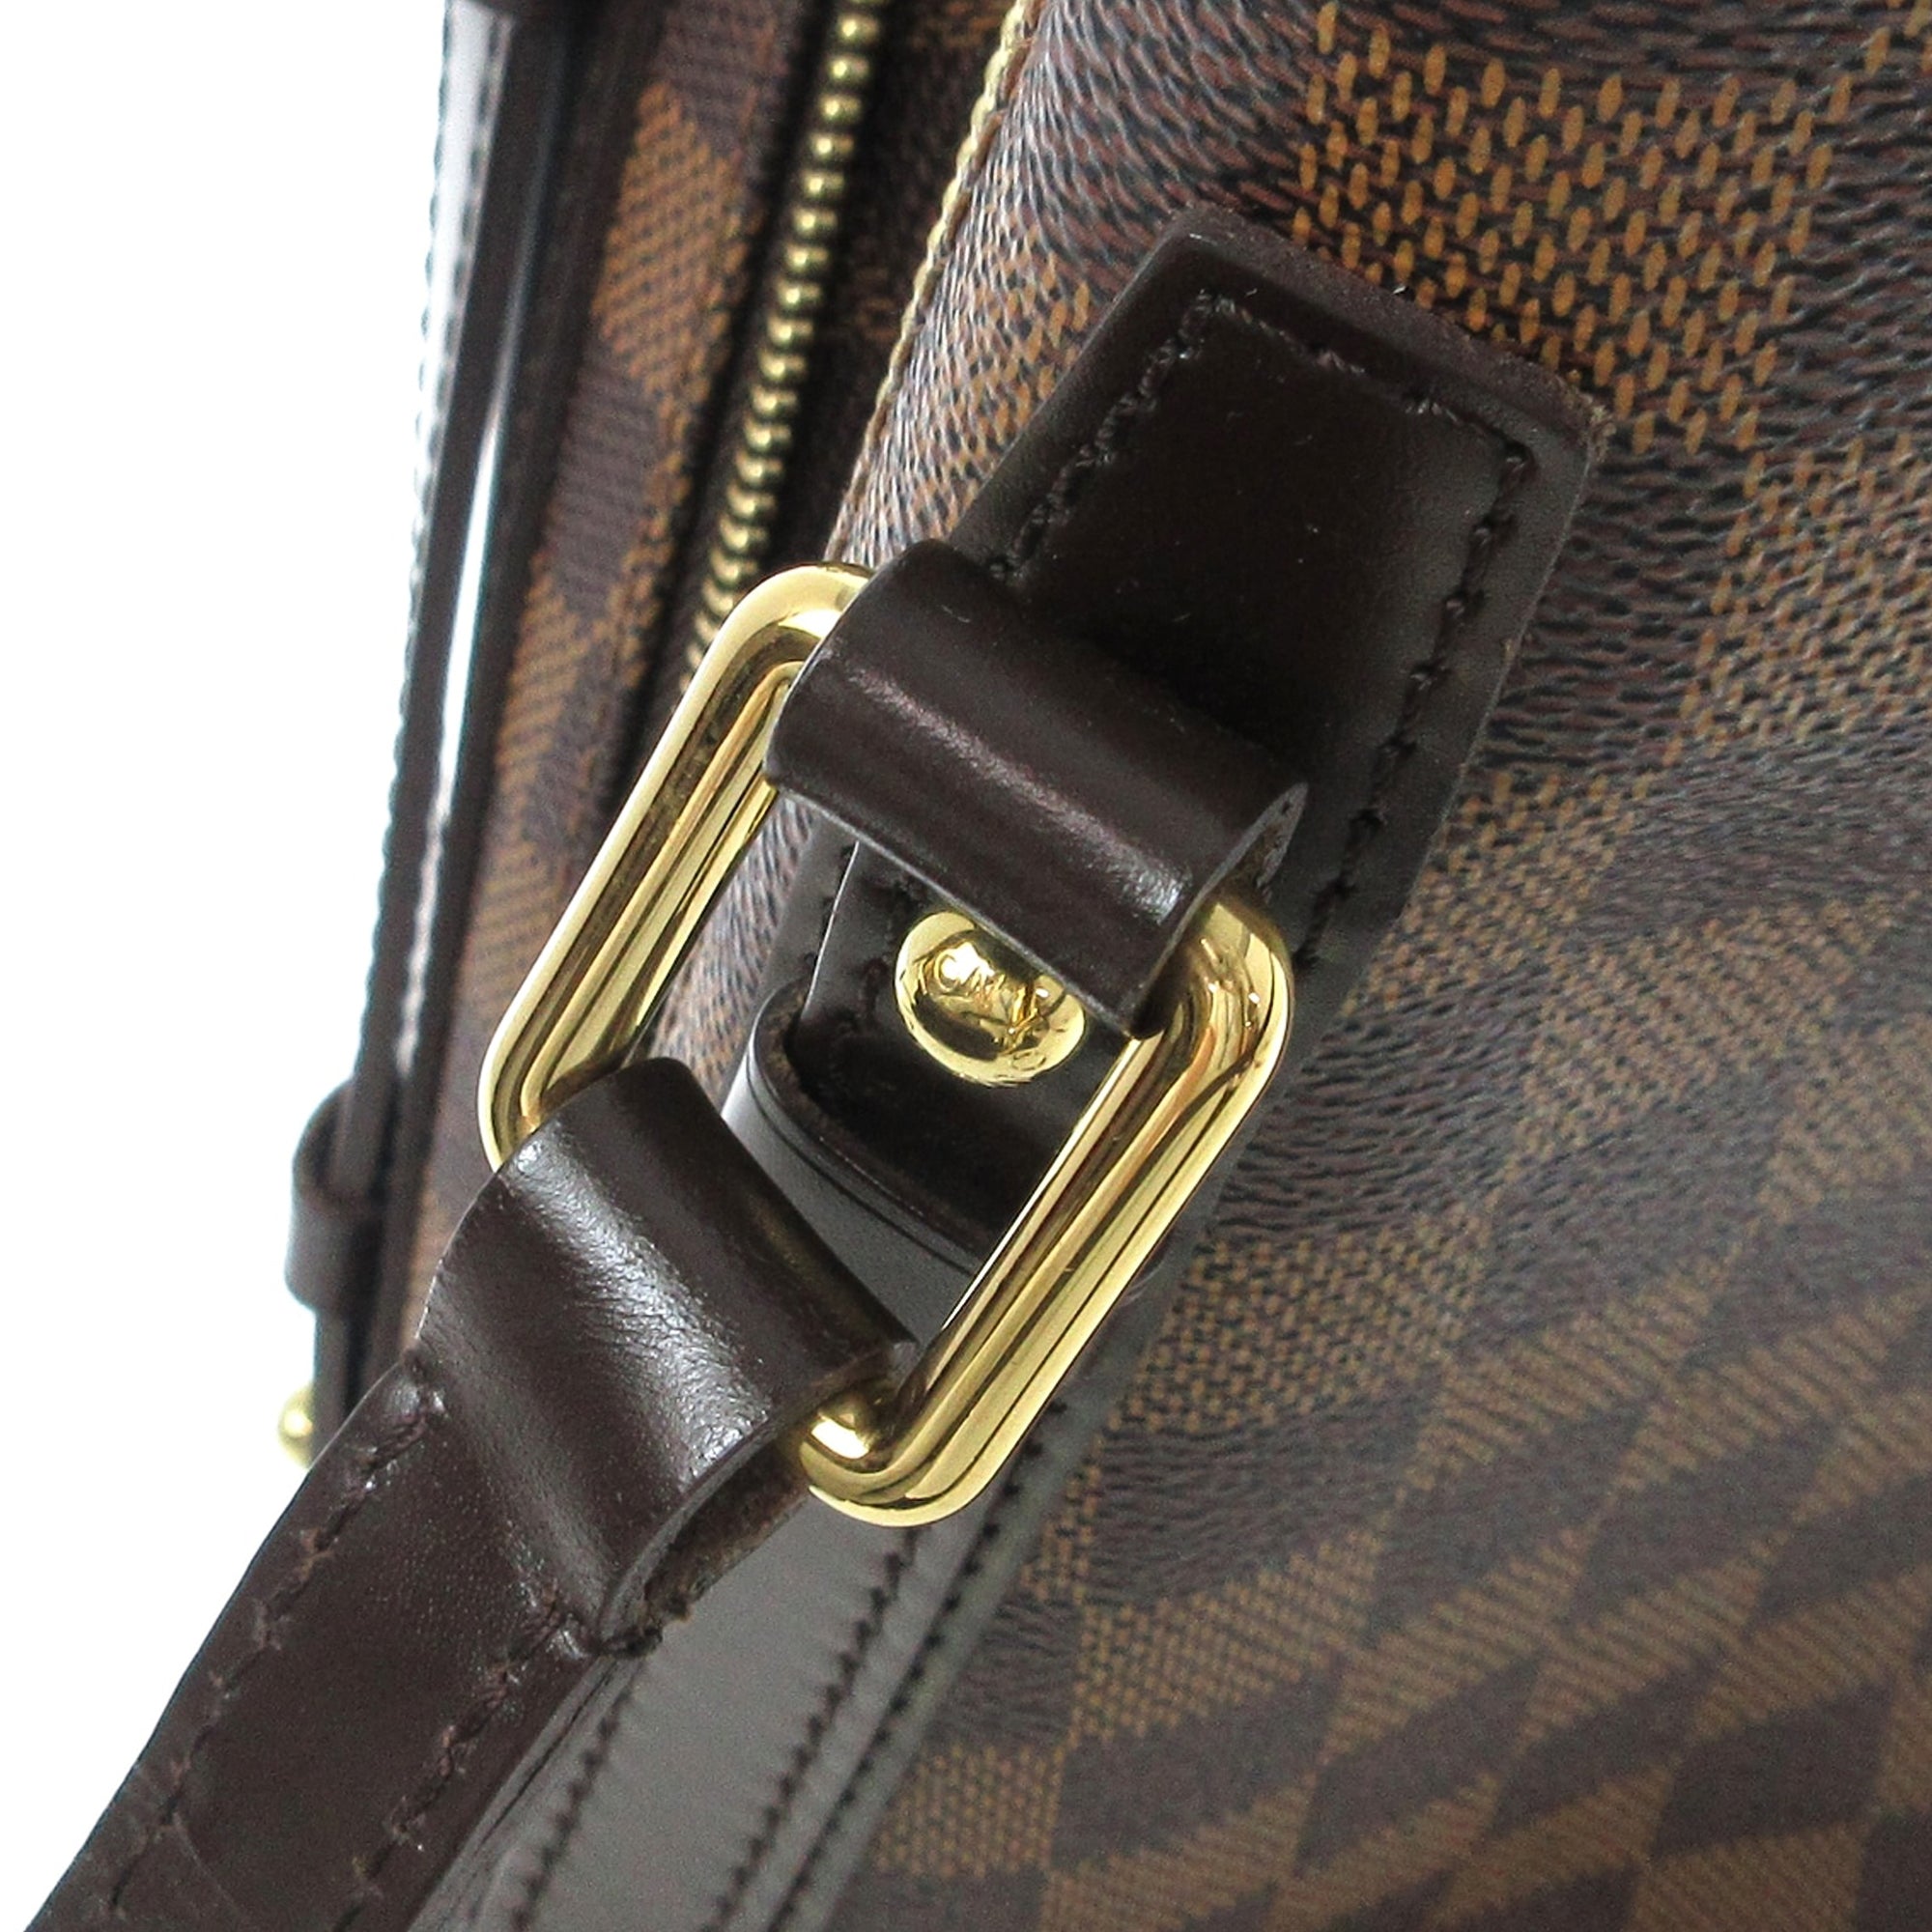 Louis Vuitton Damier Ebene Cabas Rivington - Brown Totes, Handbags